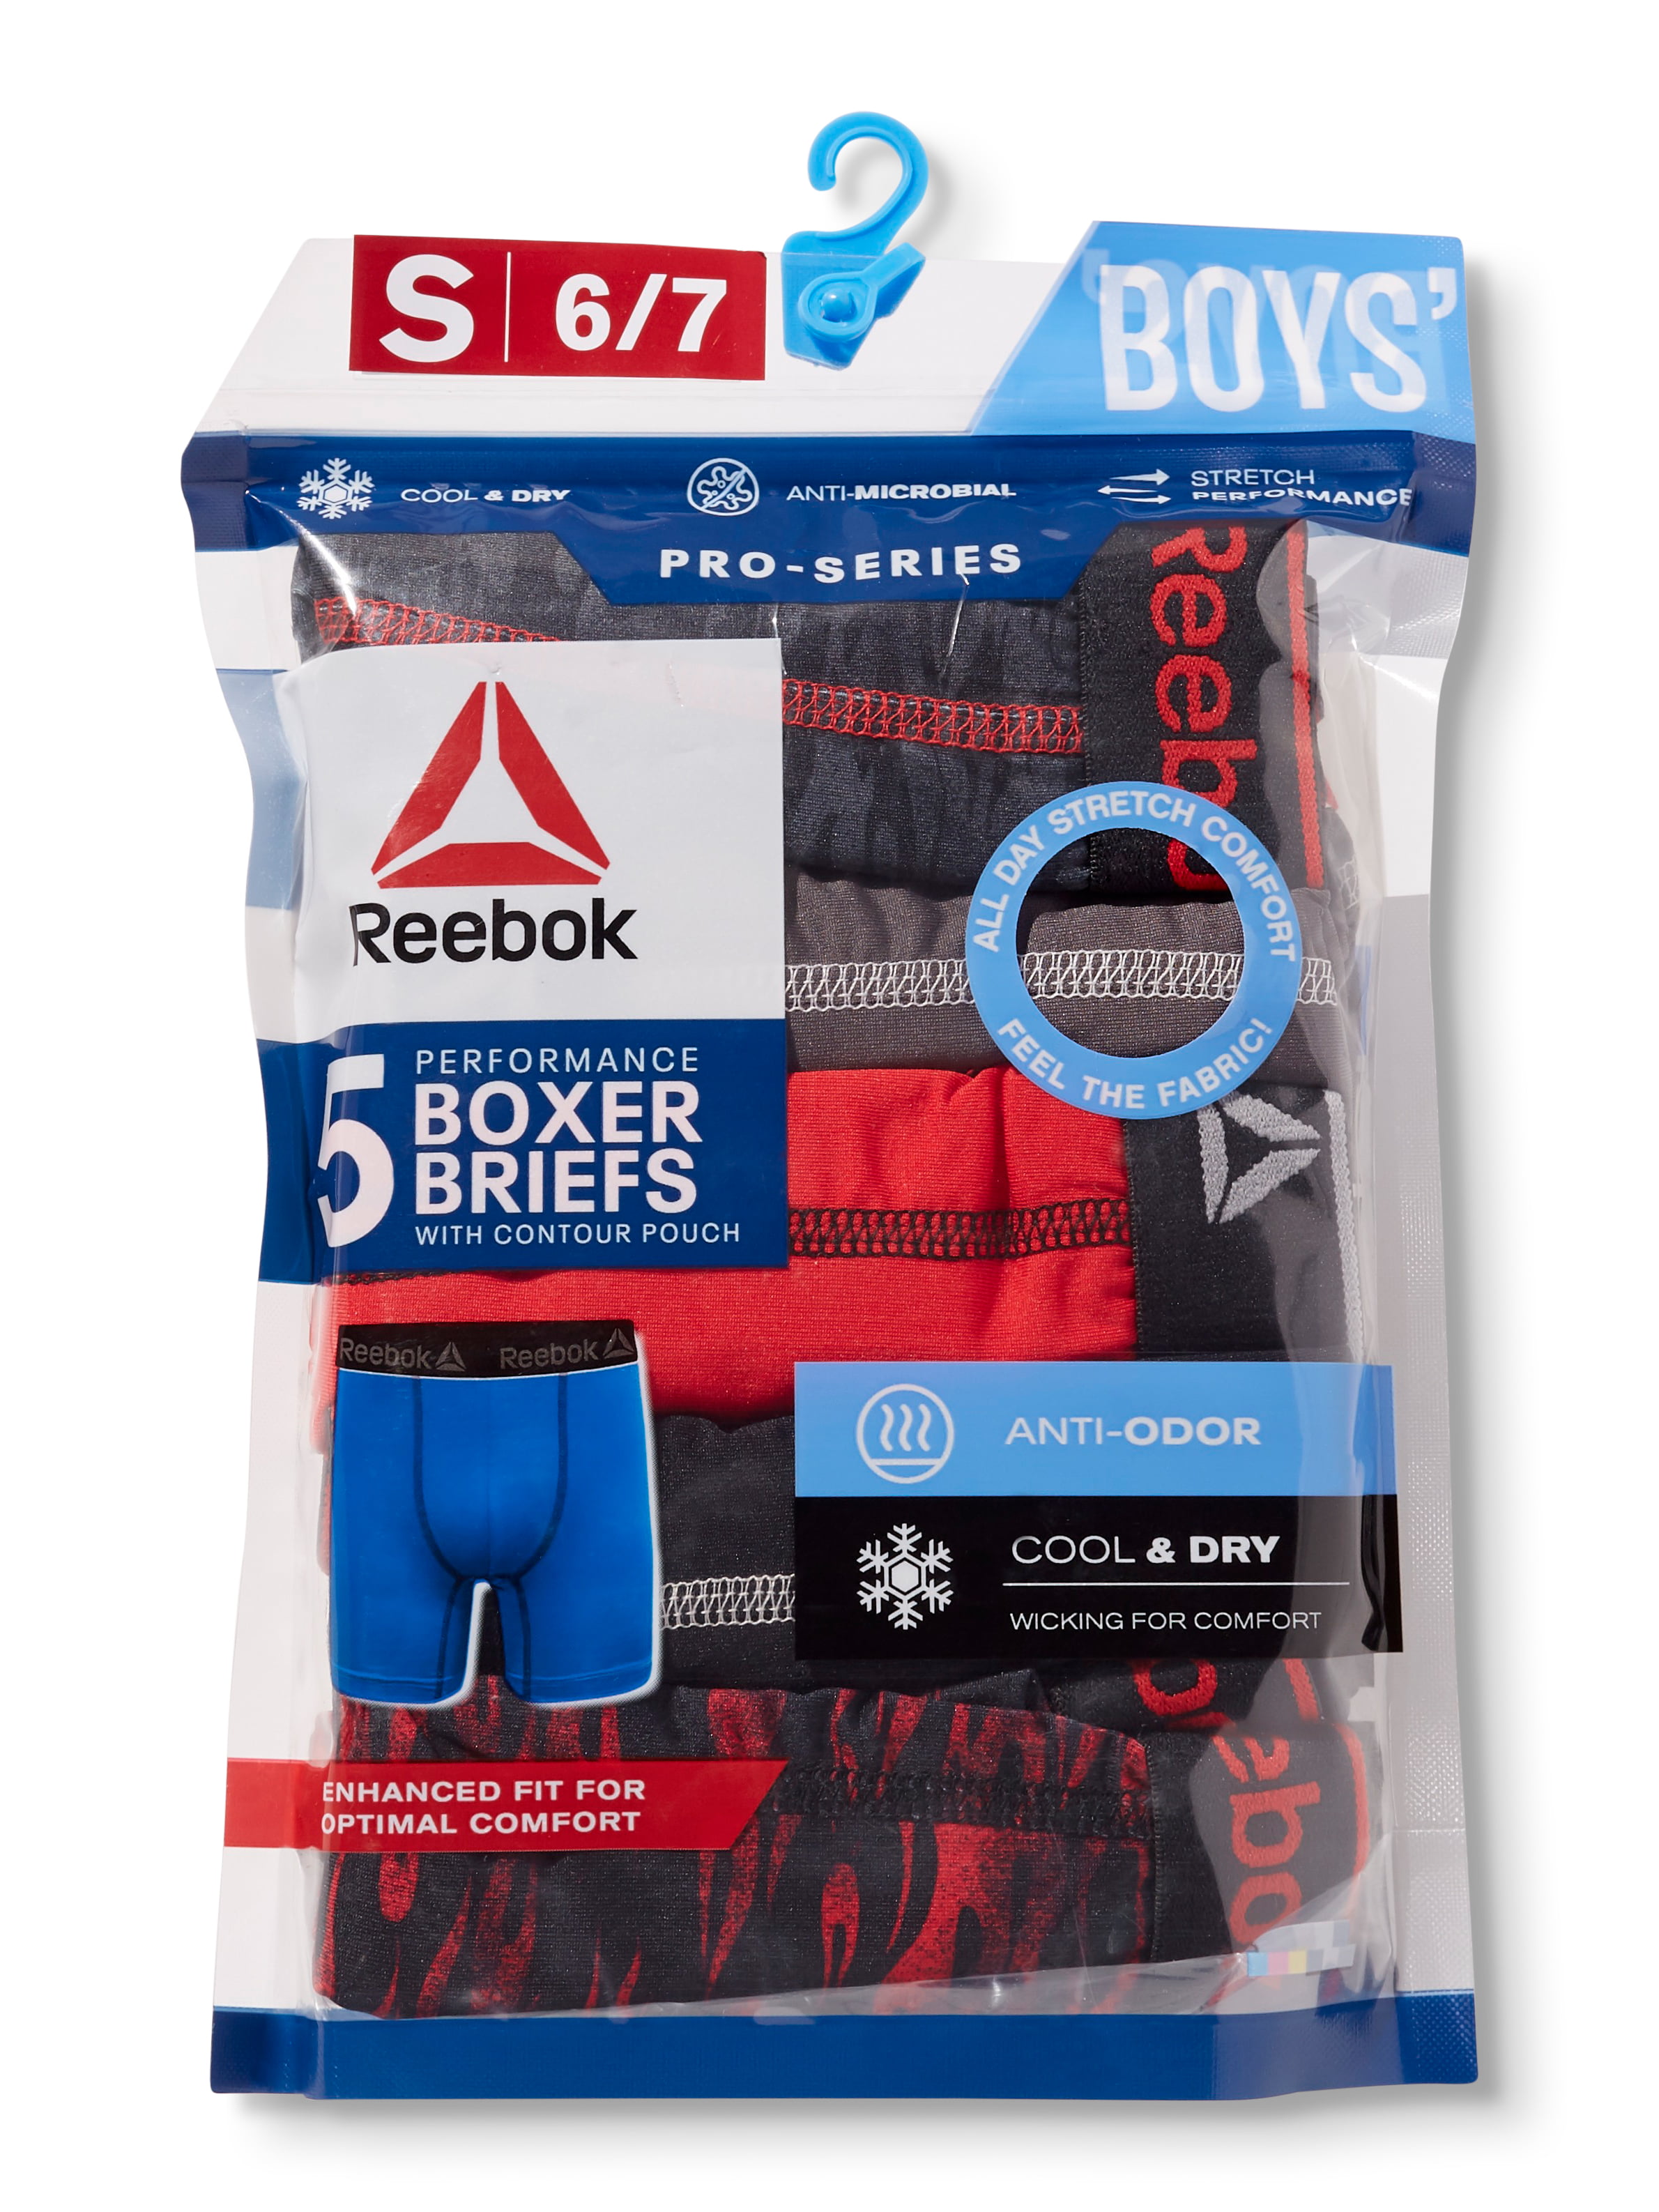 Reebok Boys' Underwear - Performance Boxer Briefs India